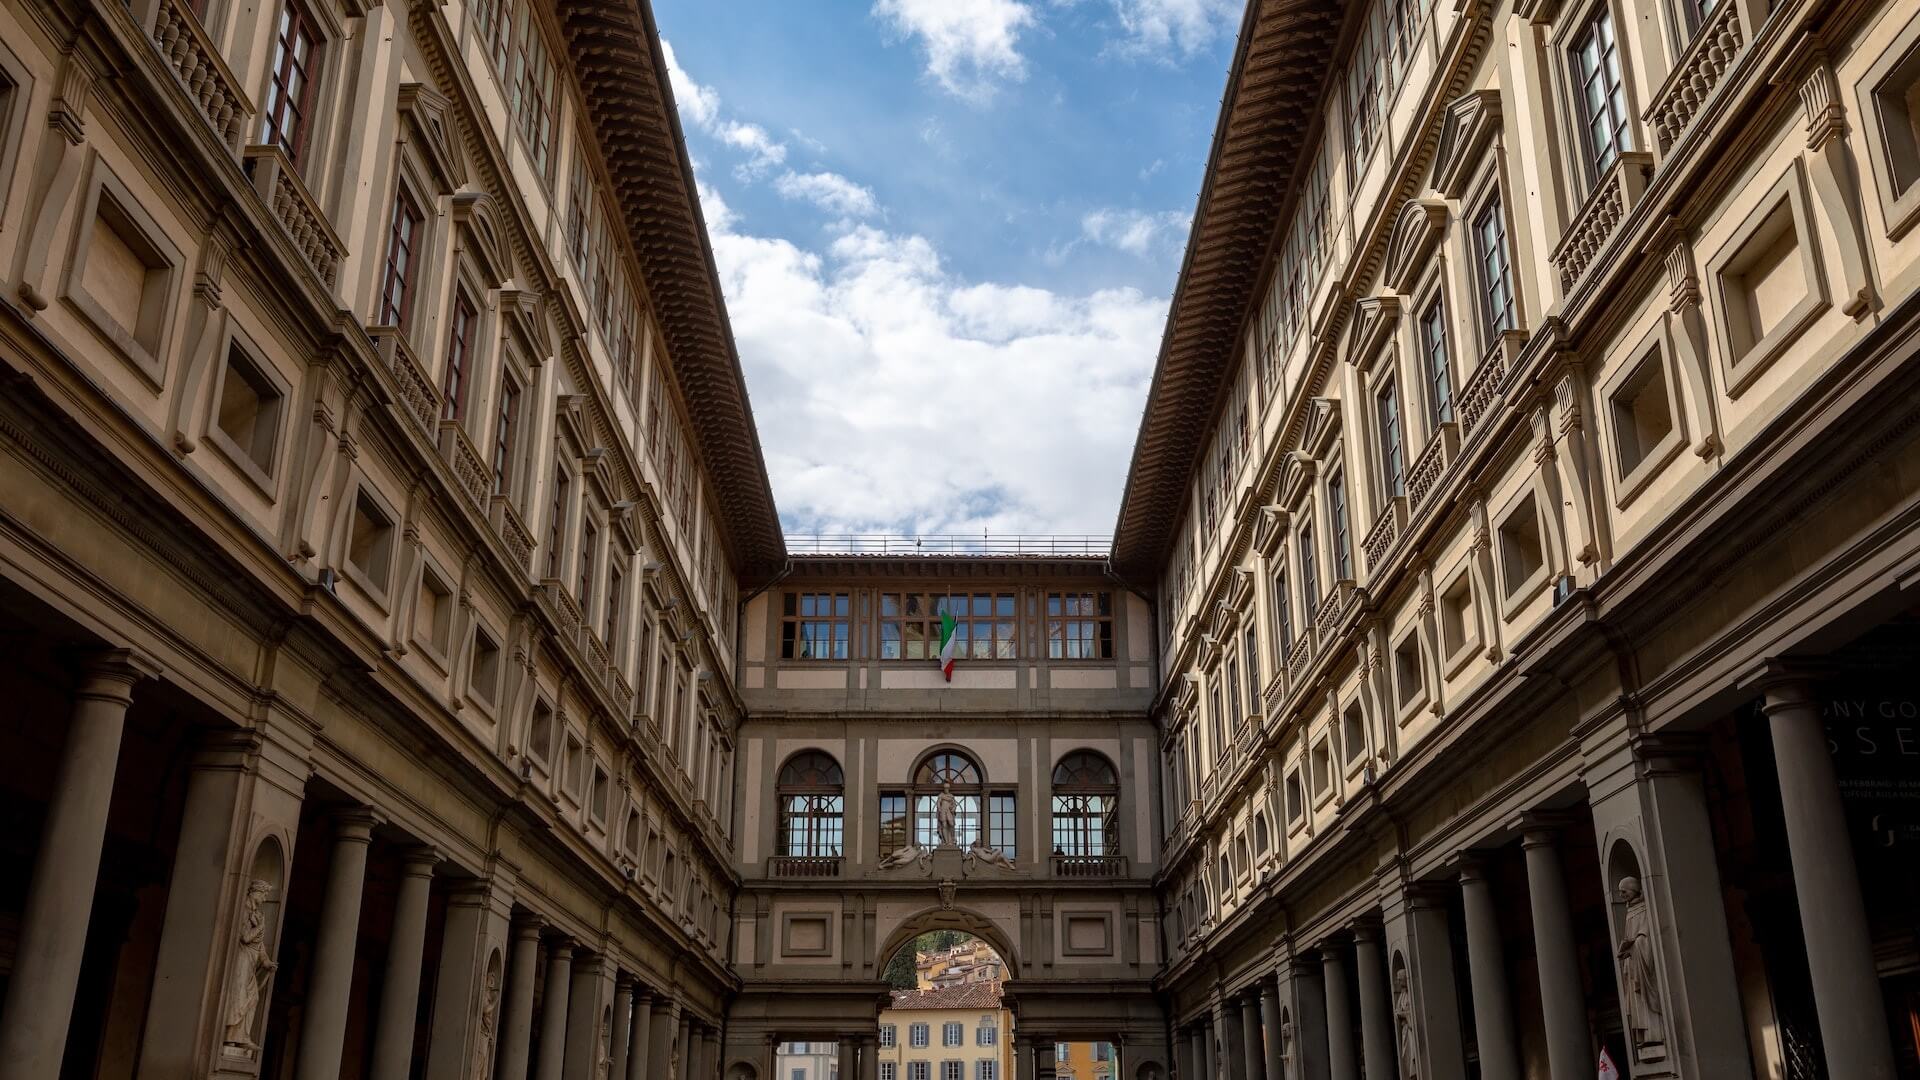 Uffizi Gallery Florence